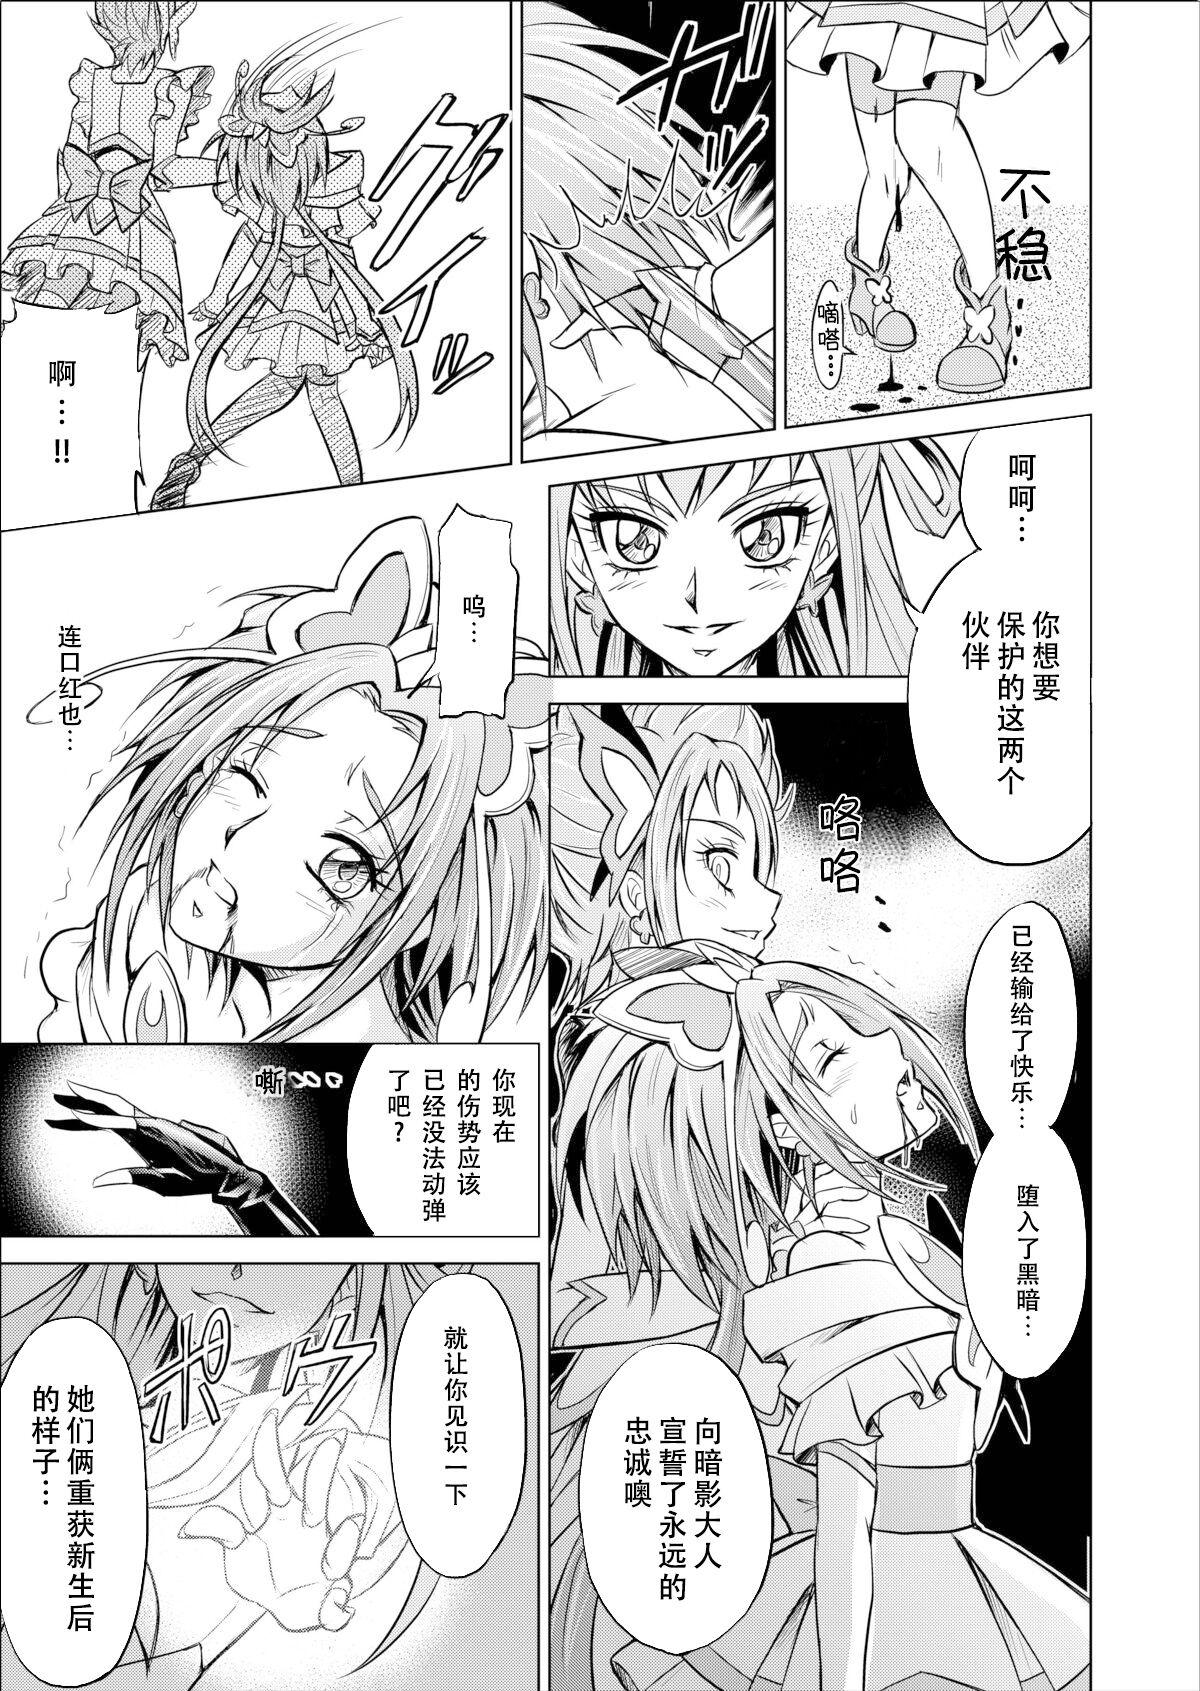 Rubbing [MACXE'S (monmon)] Mou Hitotsu no Ketsumatsu ~Henshin Heroine Kairaku Sennou Yes!! Precure 5 Hen~ 另一个结局 变身女英雄快乐洗脑 yes!! 光之美少女5篇 第三话 (Yes! PreCure 5) [Chinese] [LLQ个人汉化] - Yes precure 5 3some - Page 9